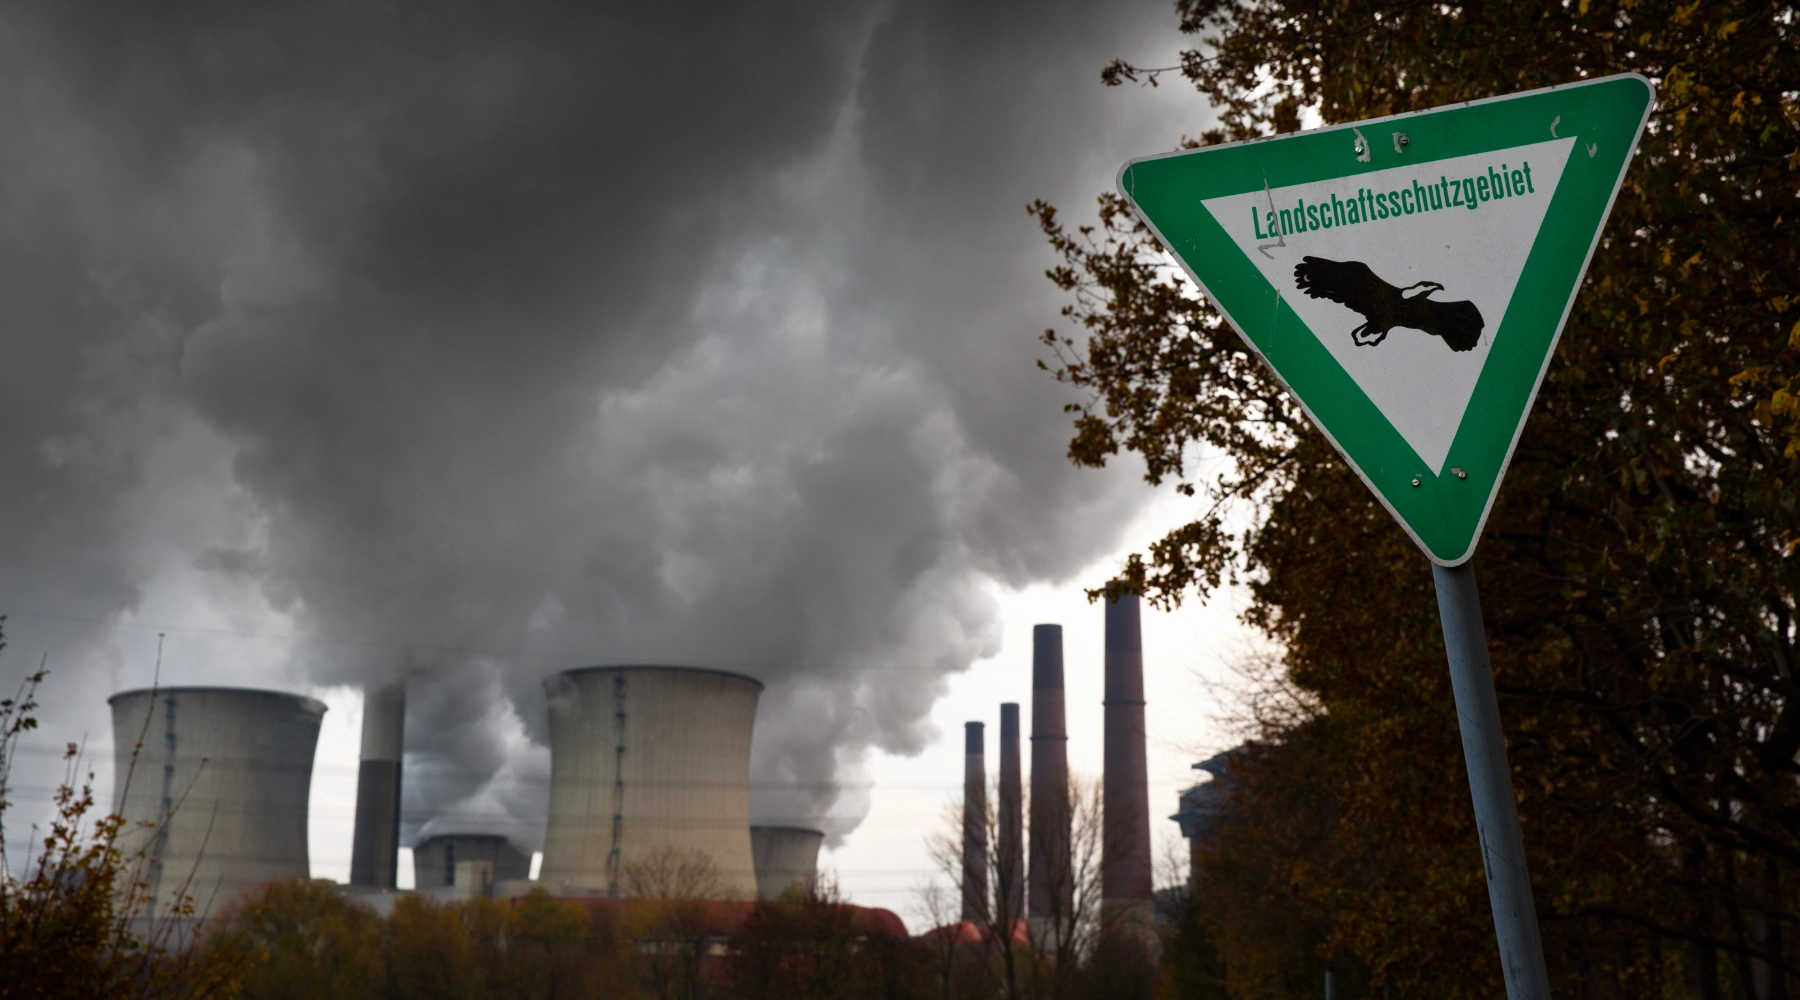 Im Vordergrund steht ein Schild mit der Aufschrift "Landschutzgebiet". Im Hintergrund sieht man ein Kraftwerk, welches Rauch ausstößt.